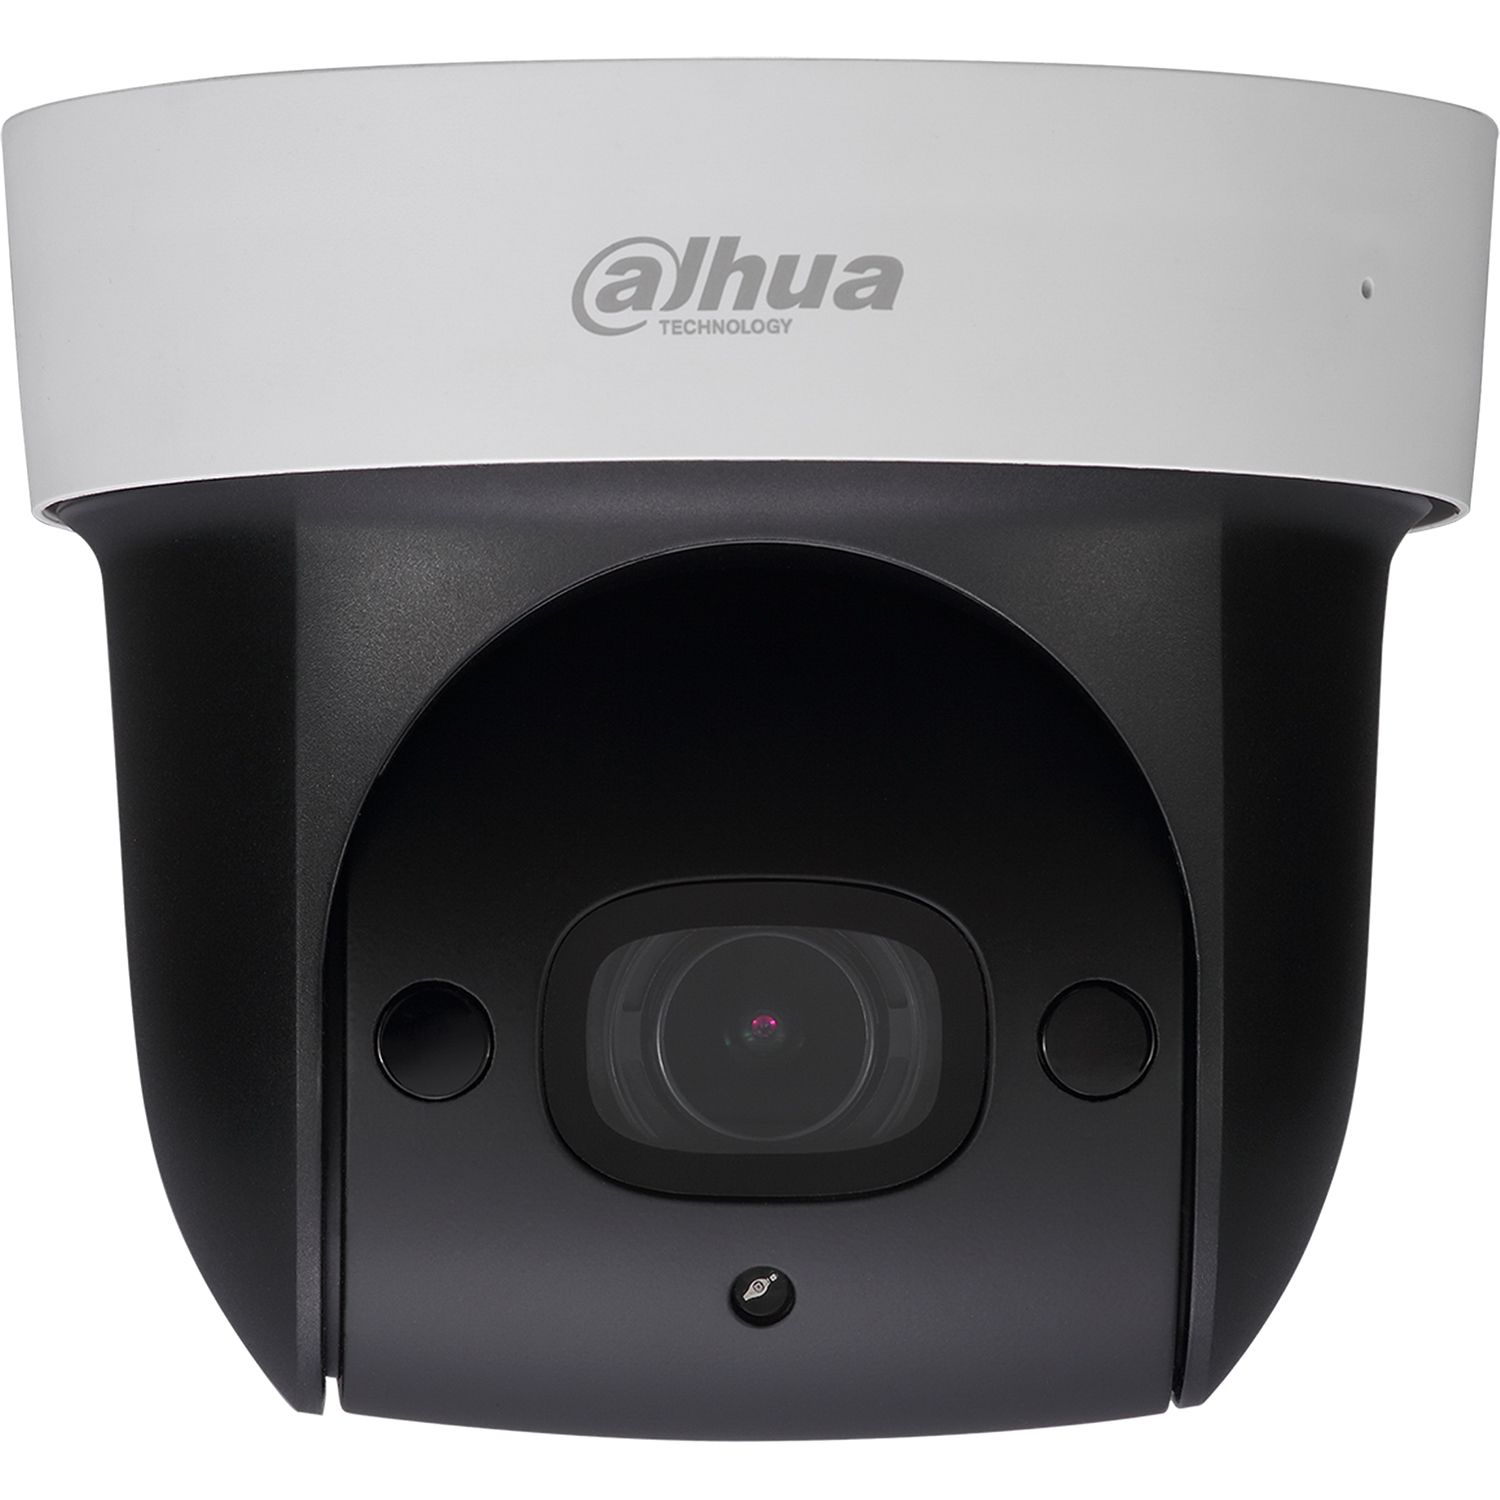 видеокамера ip hikvision ds 2cd2023g2 iu 6mm 6 6мм ная корп белый Камера видеонаблюдения IP Dahua DH-SD29204UE-GN 2.7-11мм цв. корп.:белый